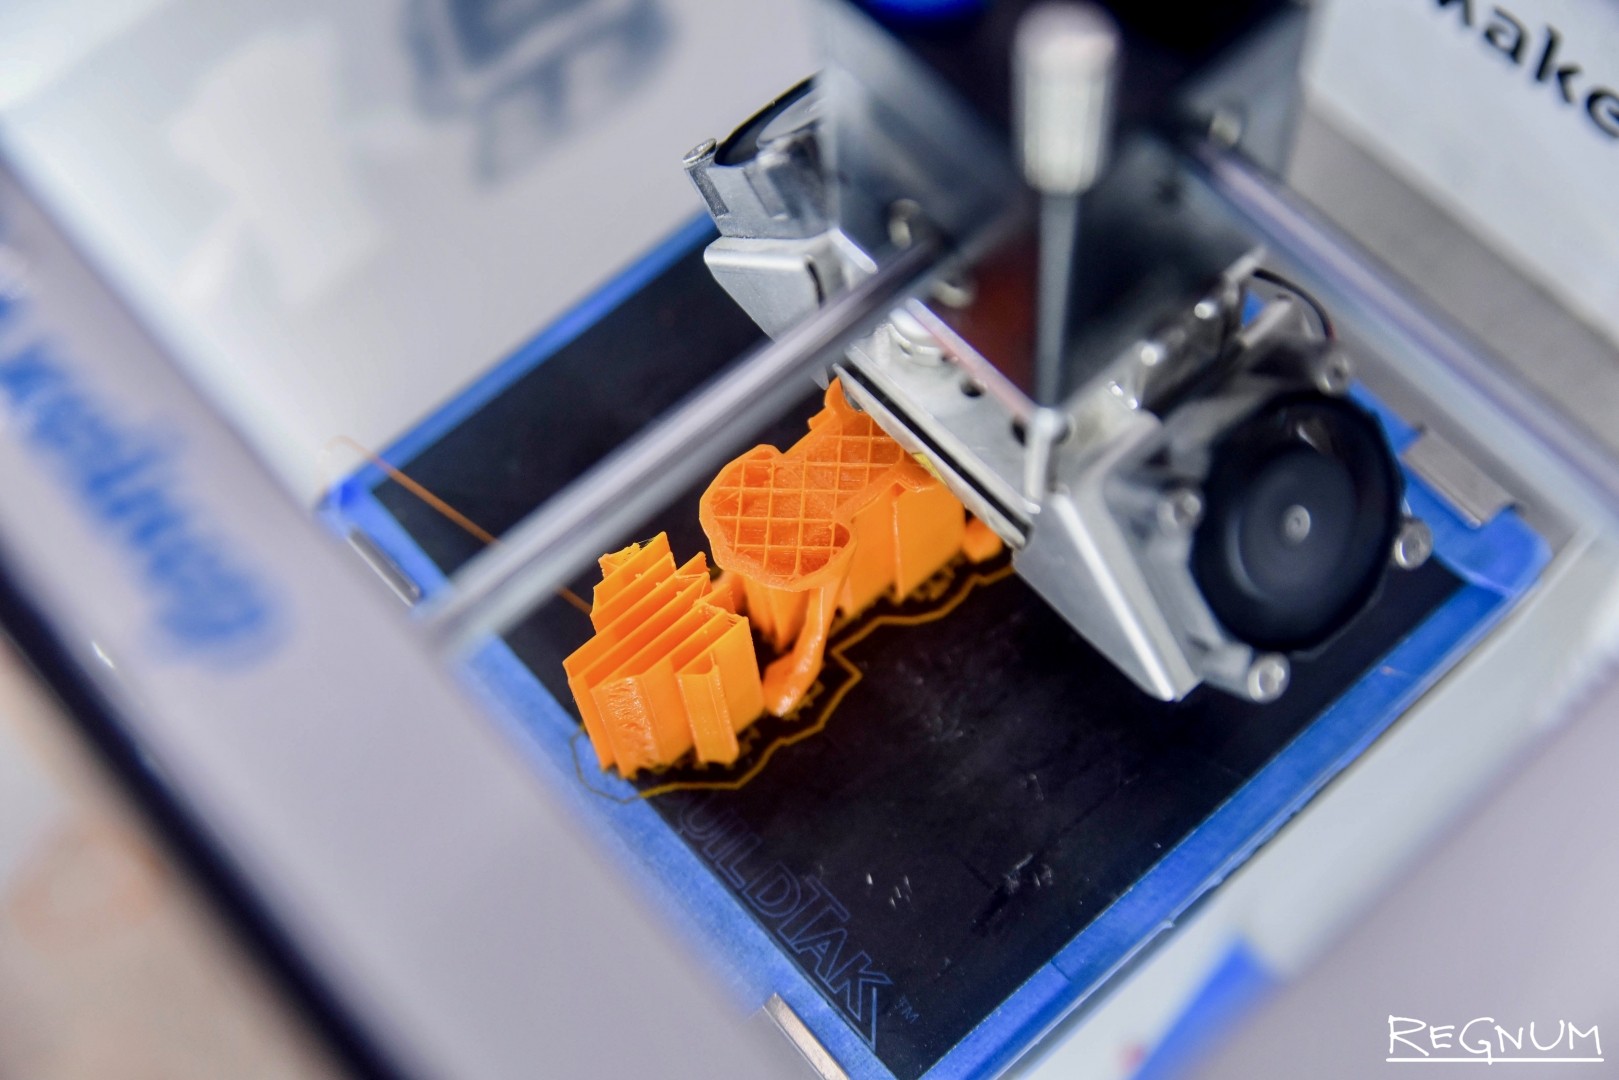 Япония внедряет 3D печать суши - новая волна инноваций